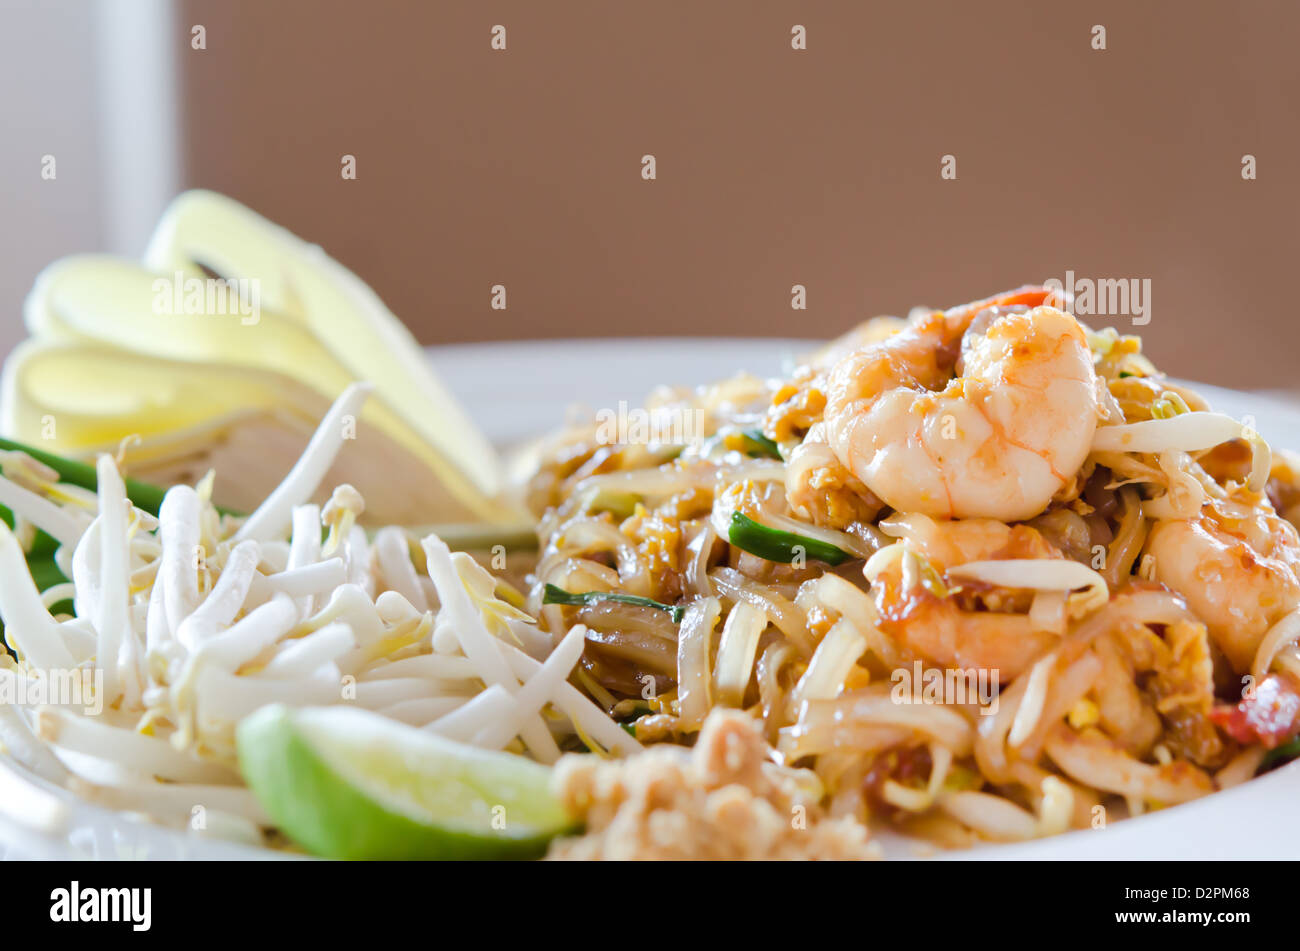 Propose de la cuisine thaïlandaise , nouilles sautés avec shrmps et des oeufs Banque D'Images